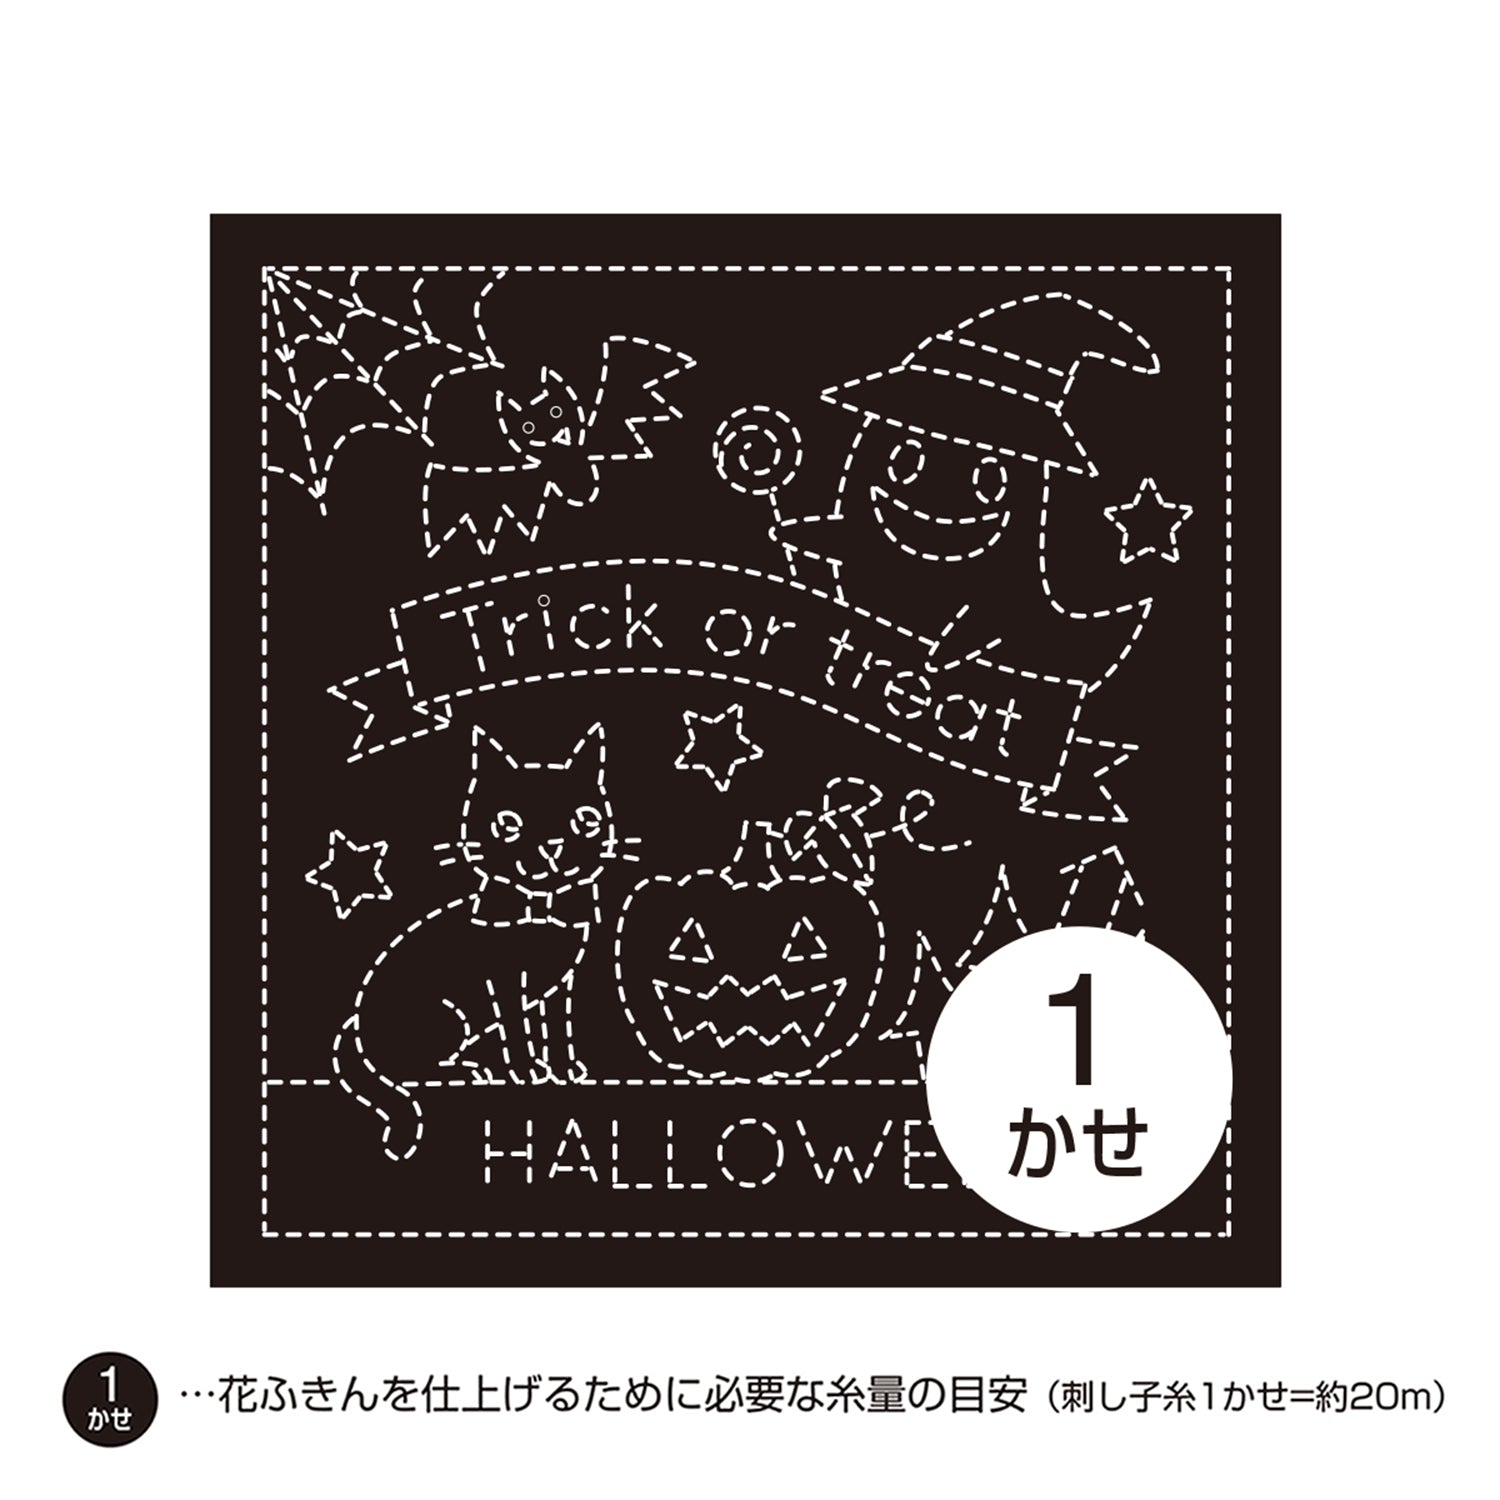 Halloween Sashiko Kit – Snuggly Monkey